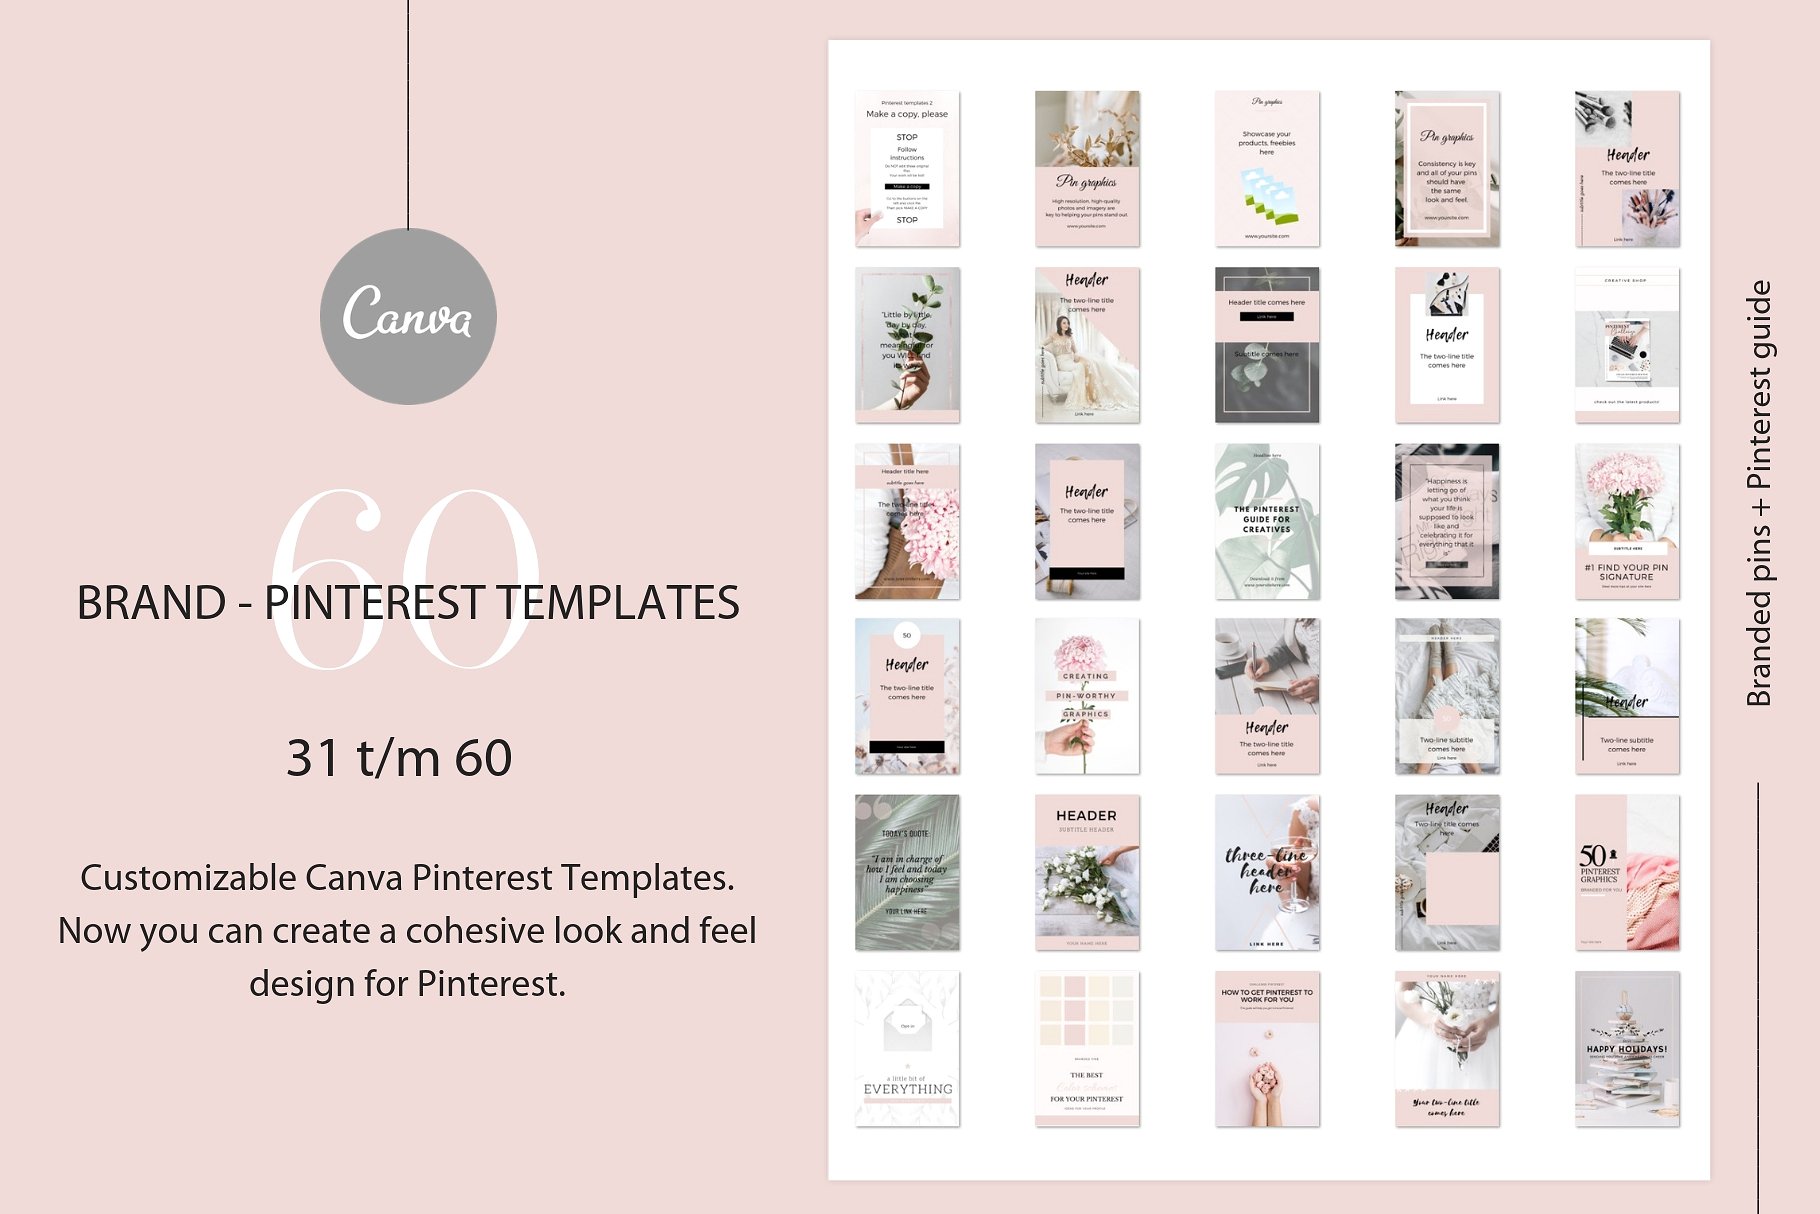 高品质的品牌社交媒体宣传Canva模板素材库精选 Branded pins + Pinterest guide [jpg,pdf]插图(4)